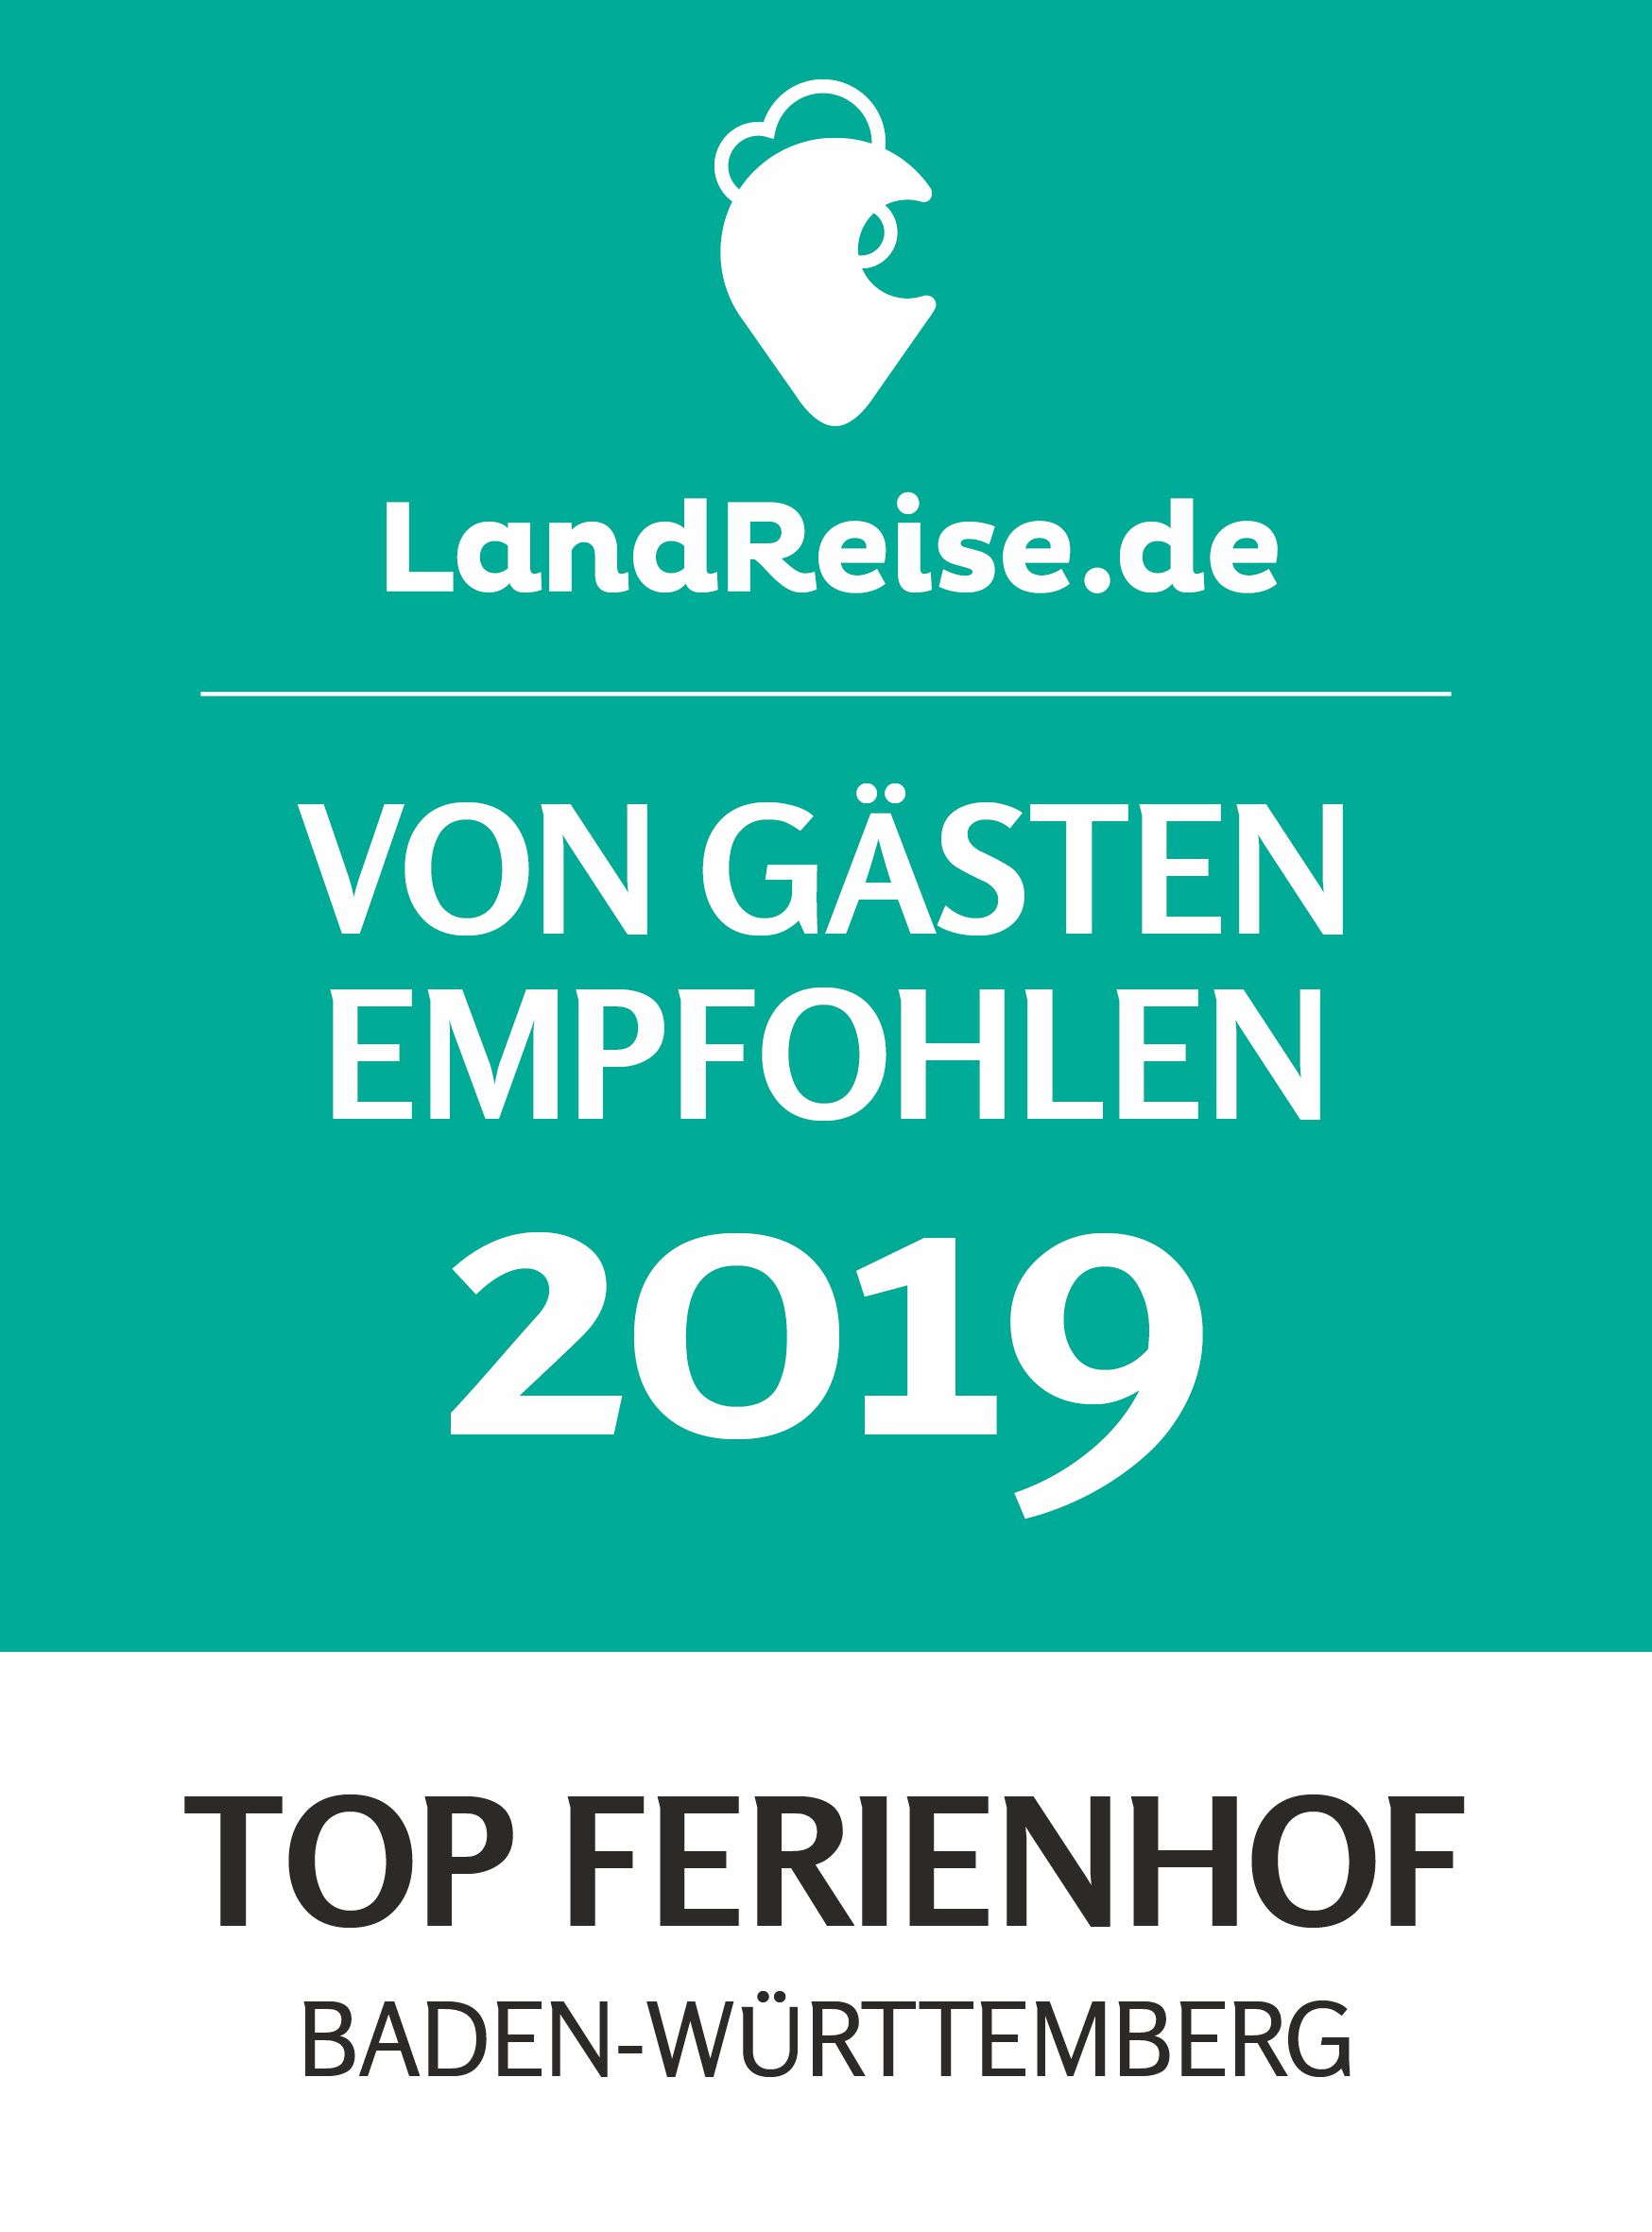 Top Ferienhof 2019